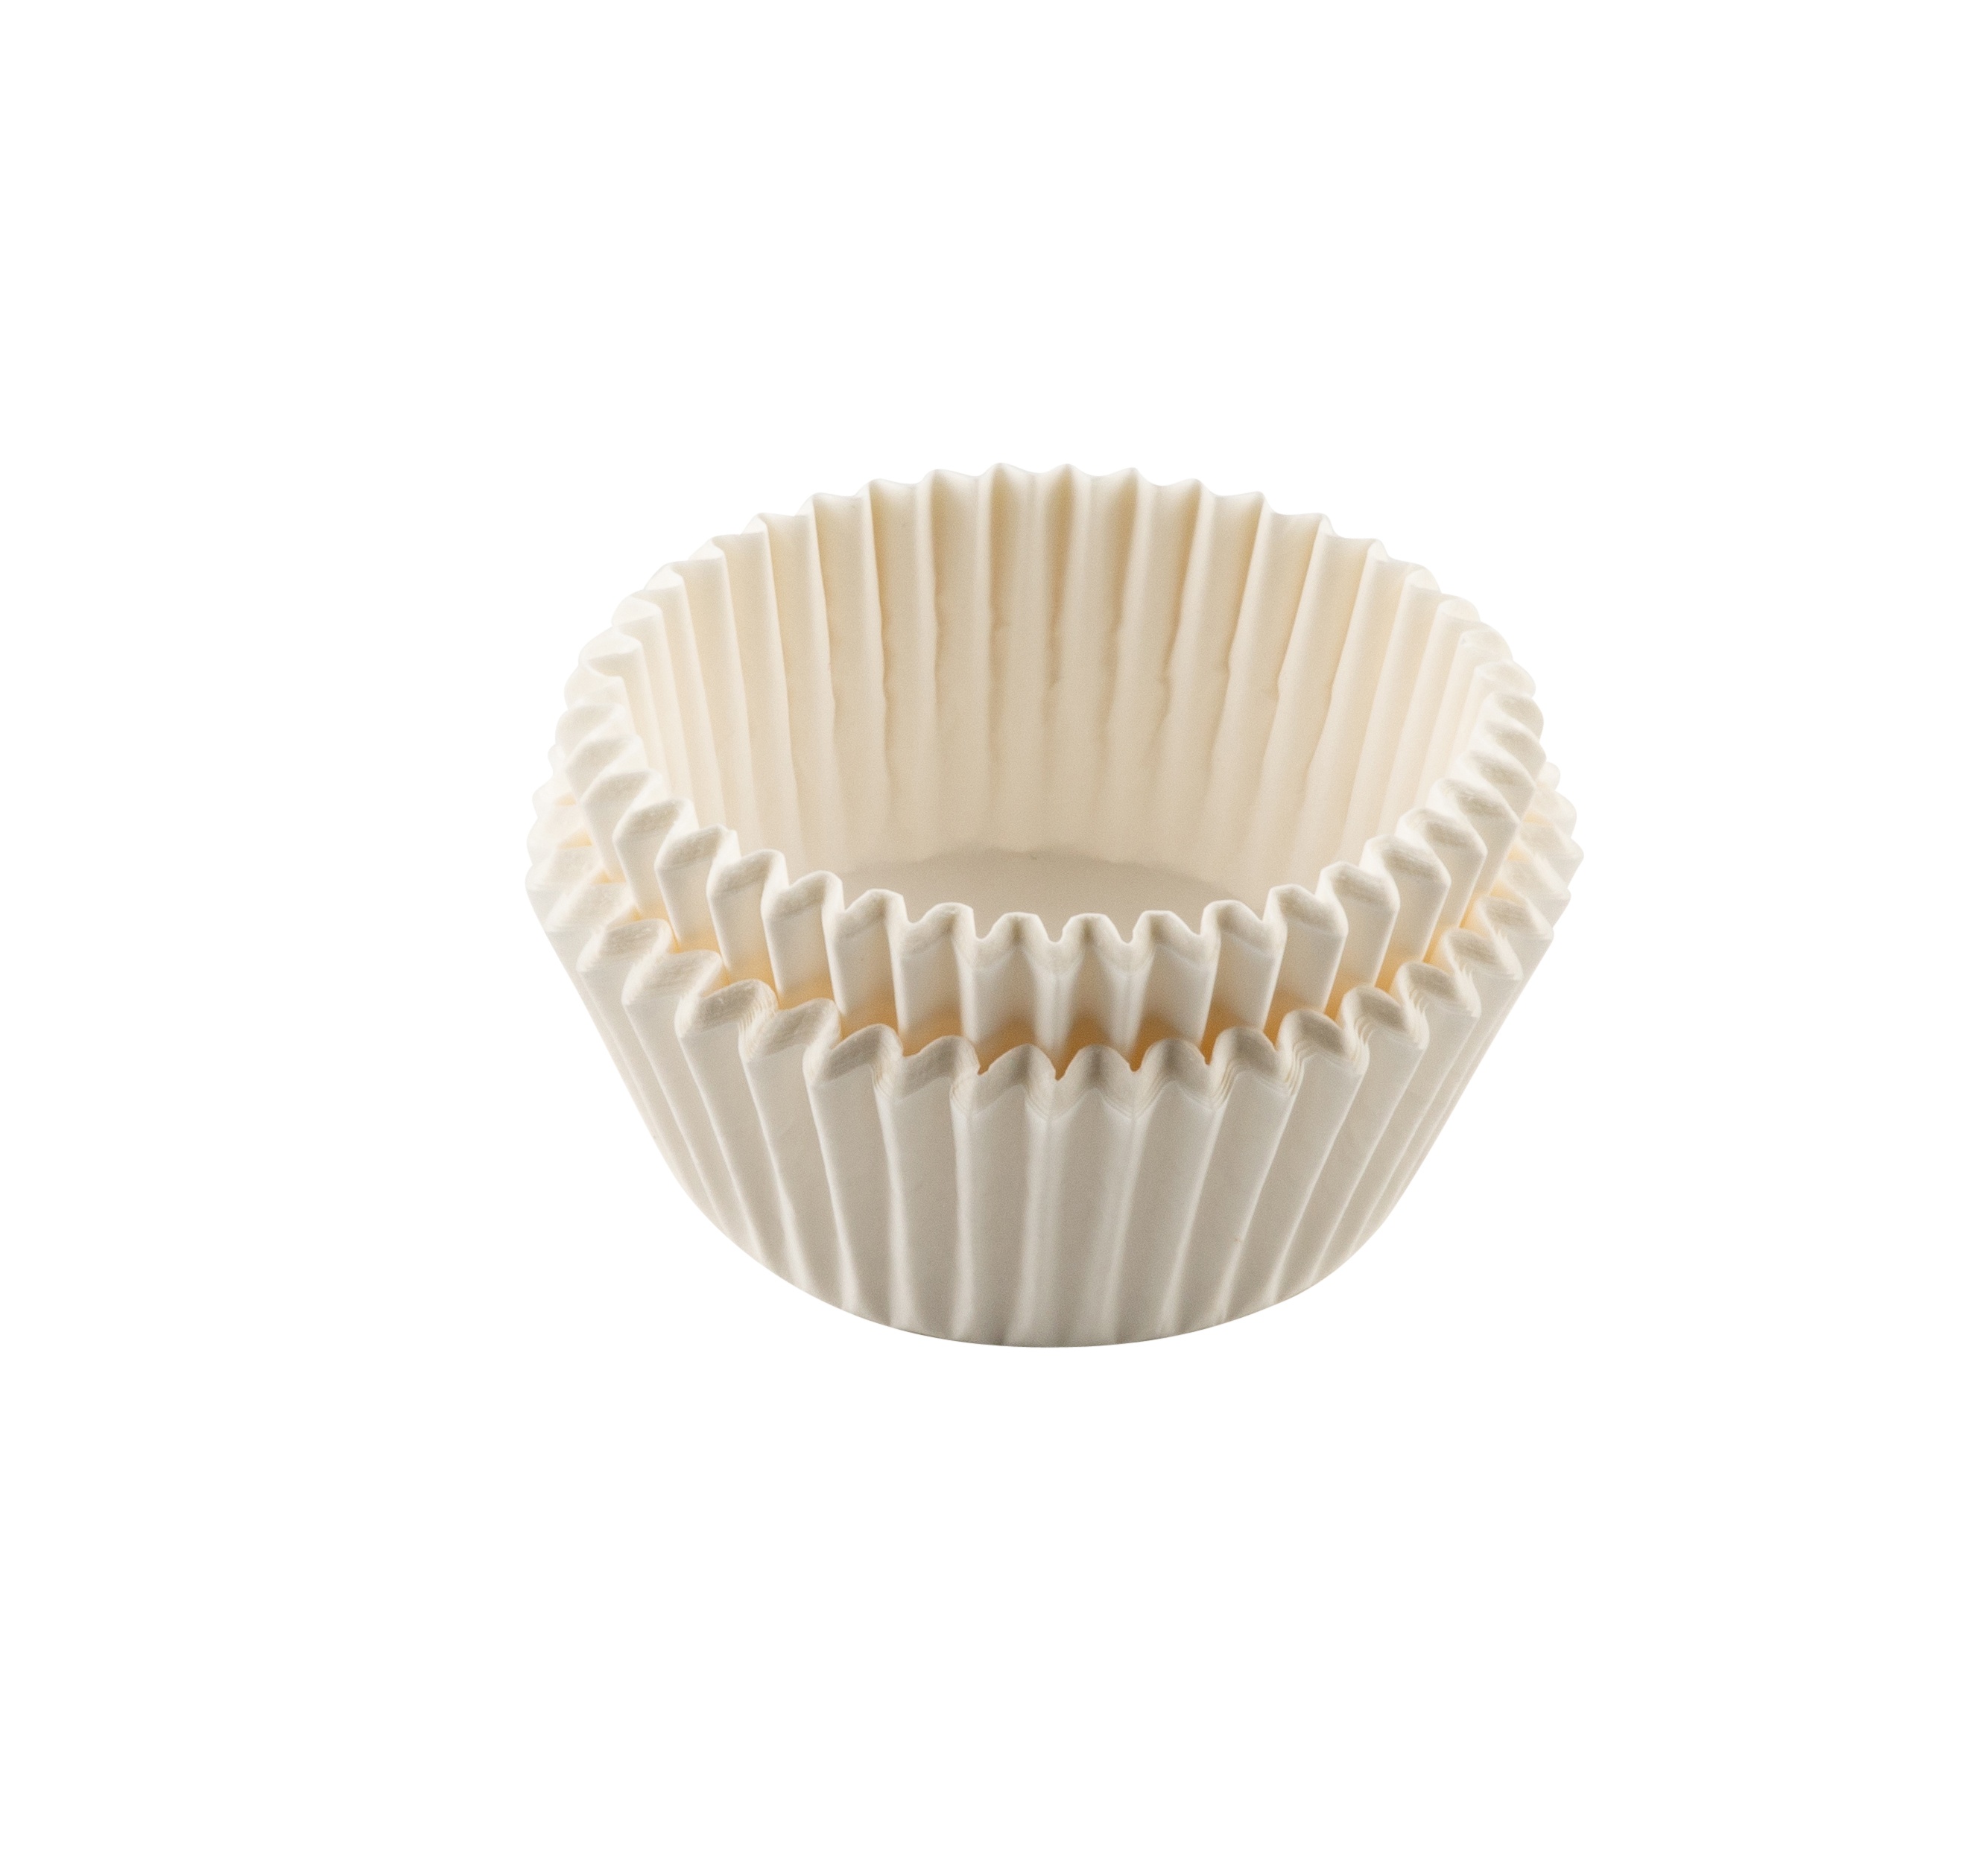  Tasty Cápsulas de papel – 50 Piezas con certificación FSC Moldes de Papel para Muffins y Cupcakes, Resistente al calor, antigrasa y en blanco clásico